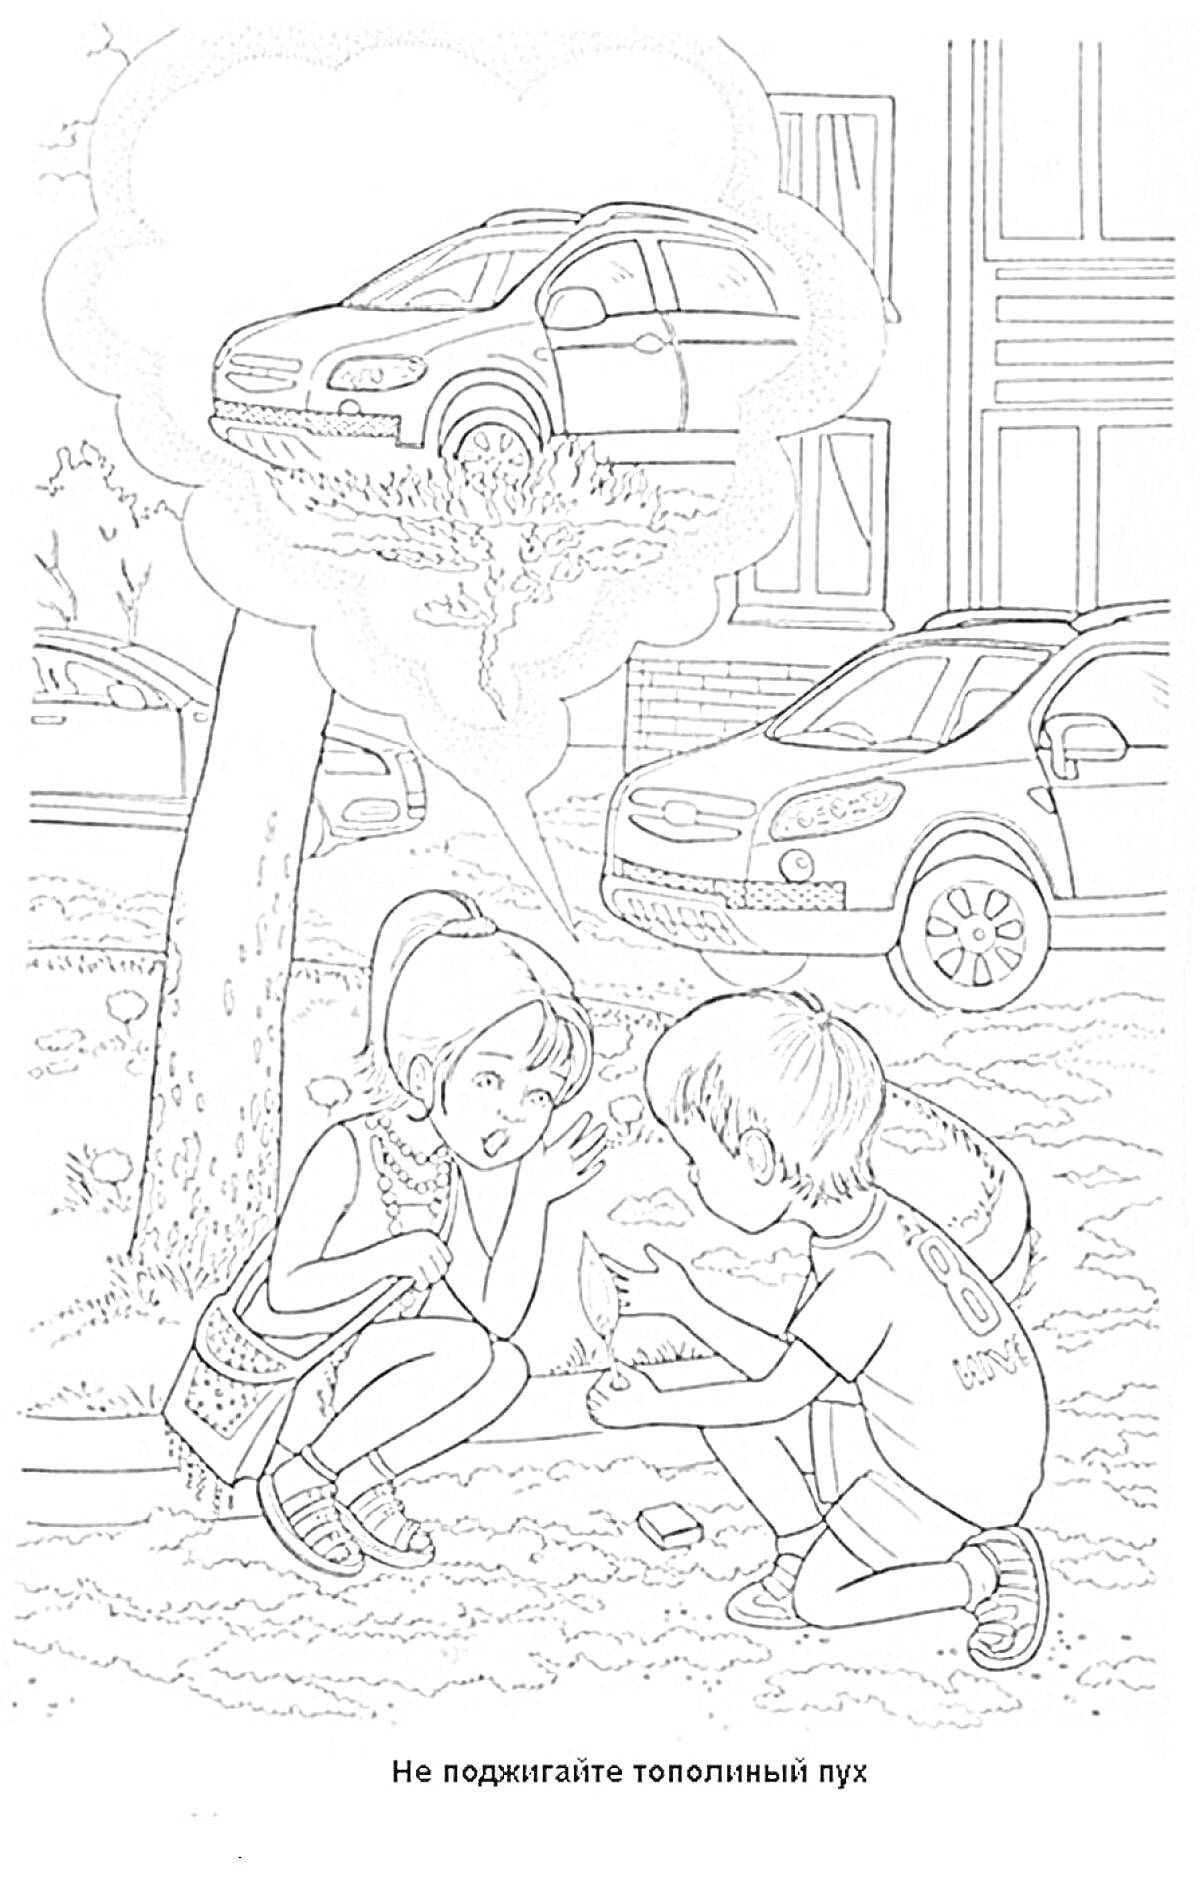 Раскраска Дети на улице с тополиным пухом и мысль о загоревшемся пылу под машиной